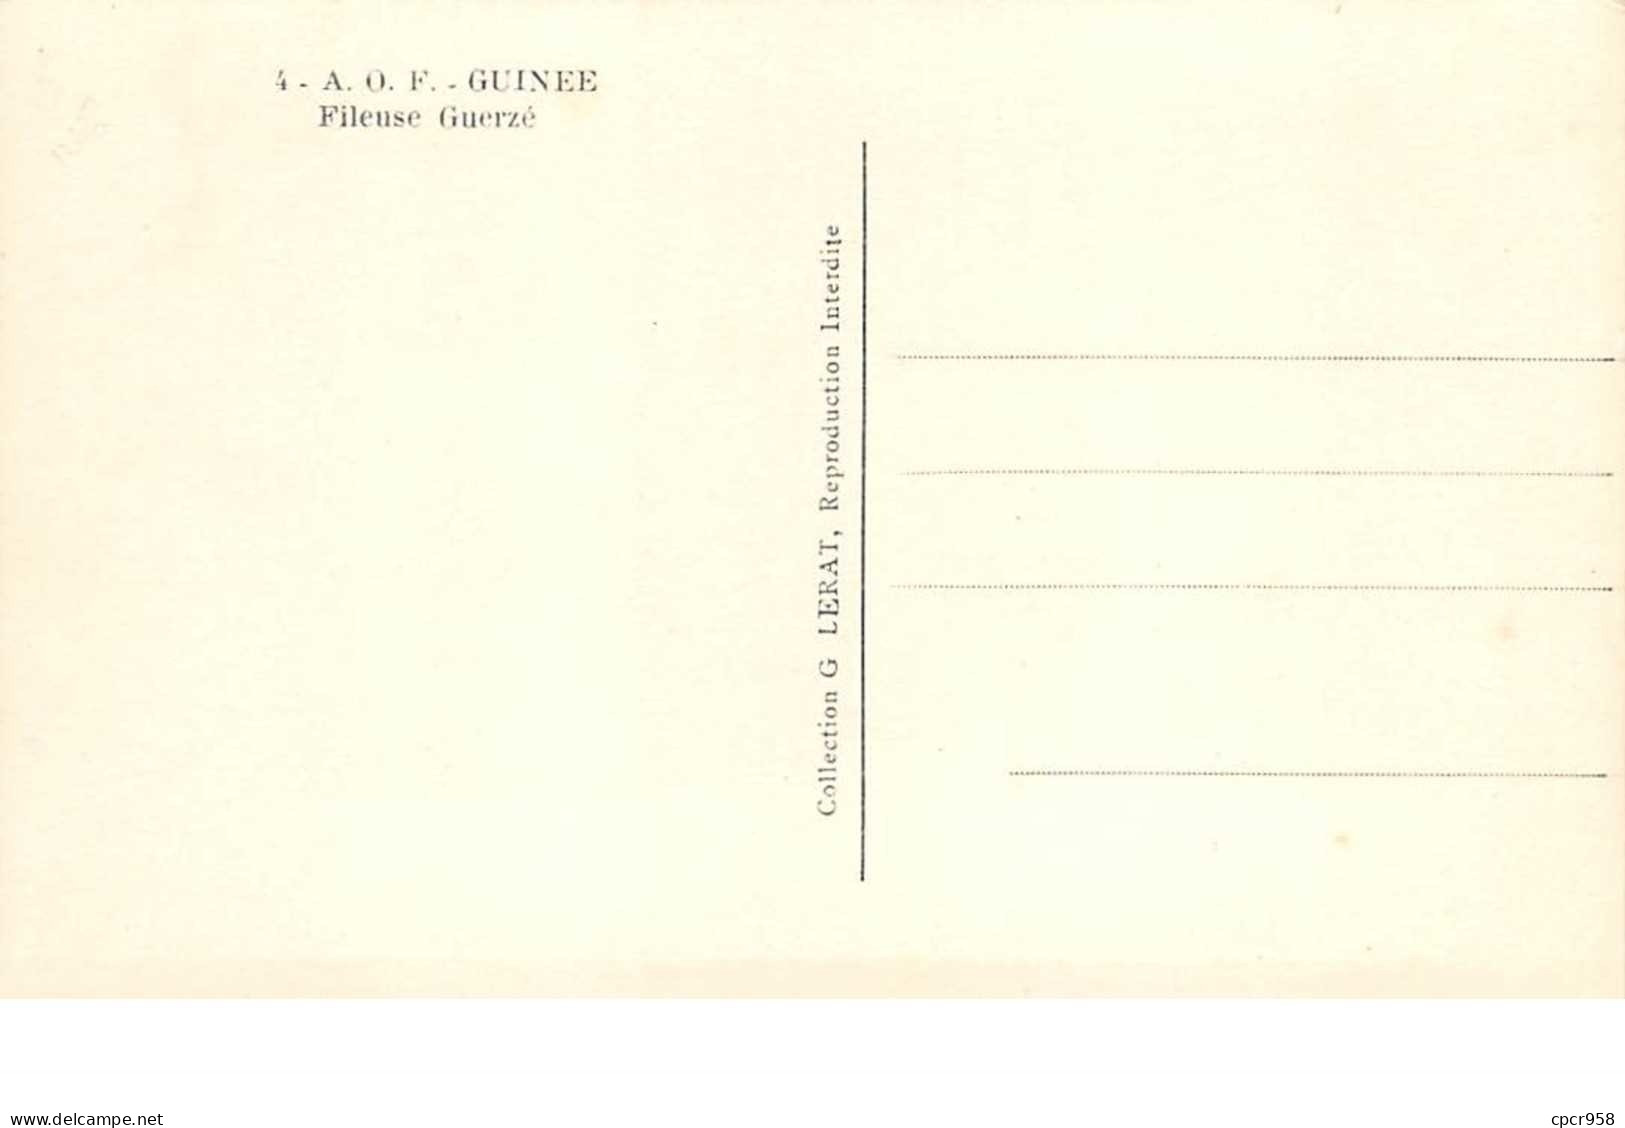 Guinée . A O F . N°52109 . Ethnique . Scarifications . Collection G.LERAT . N°04 . Fieuse Guerzé. - French Guinea